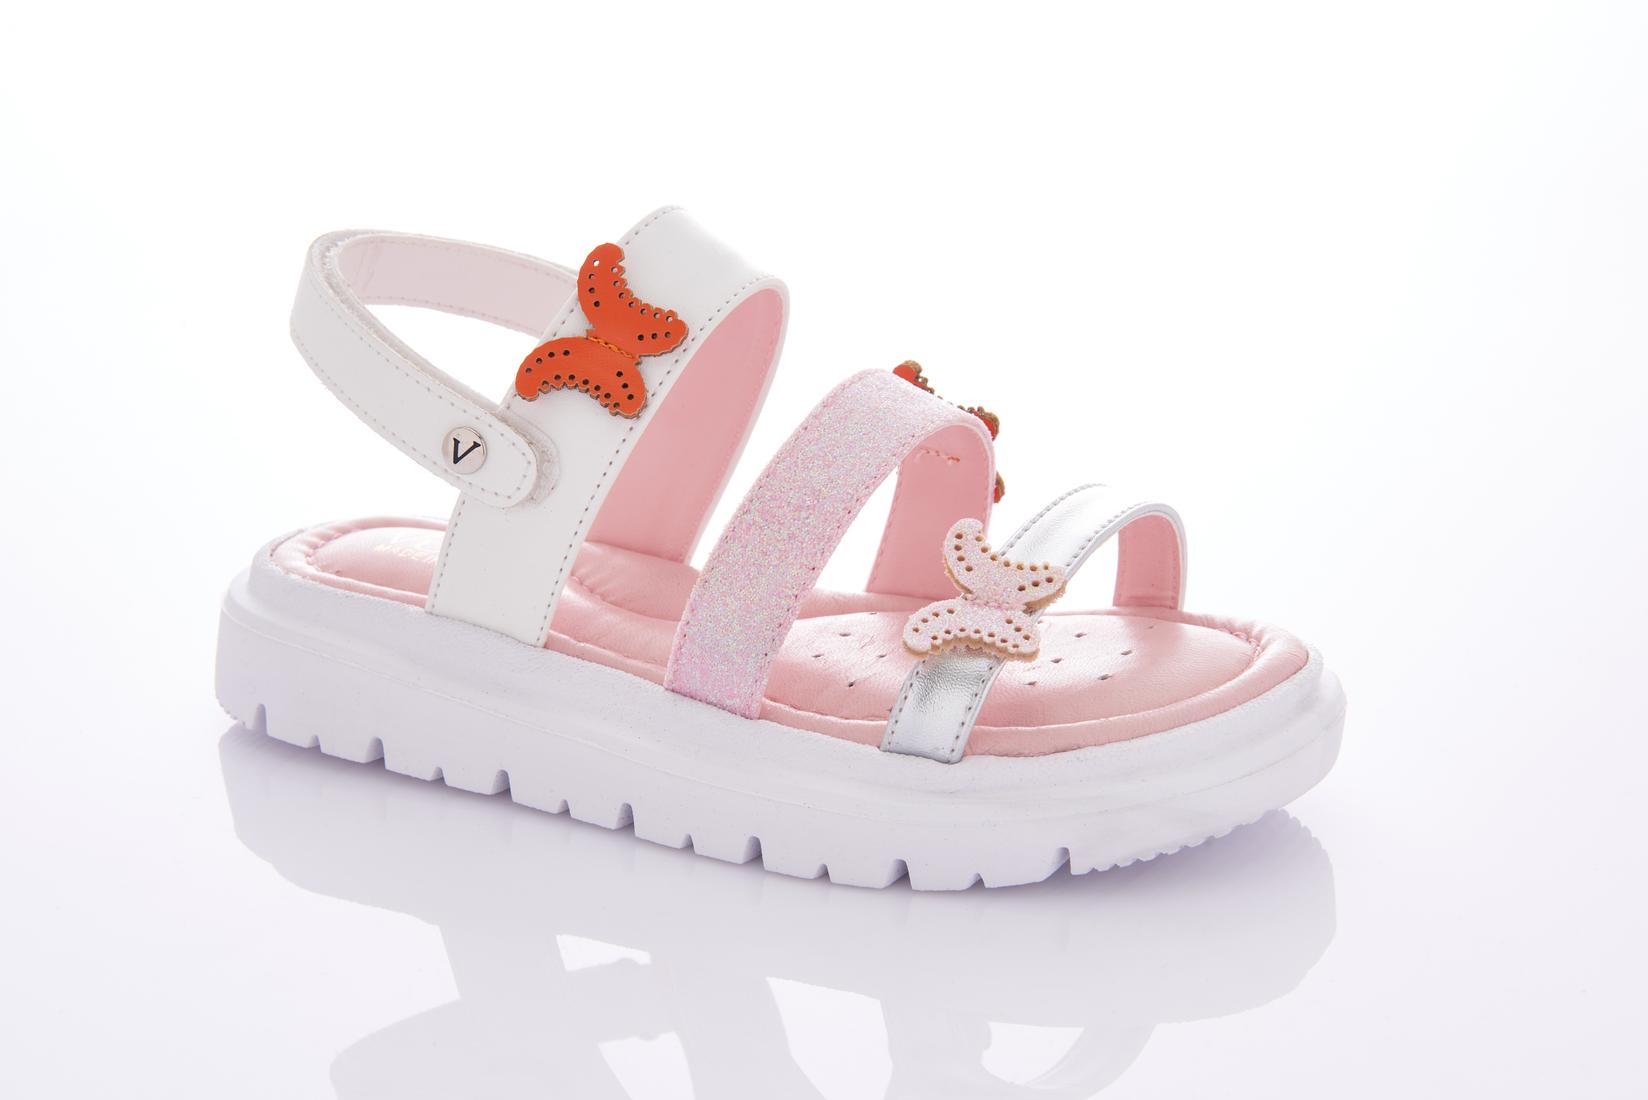 VUUDY F5544 Sandale za devojčice, Belo-roze